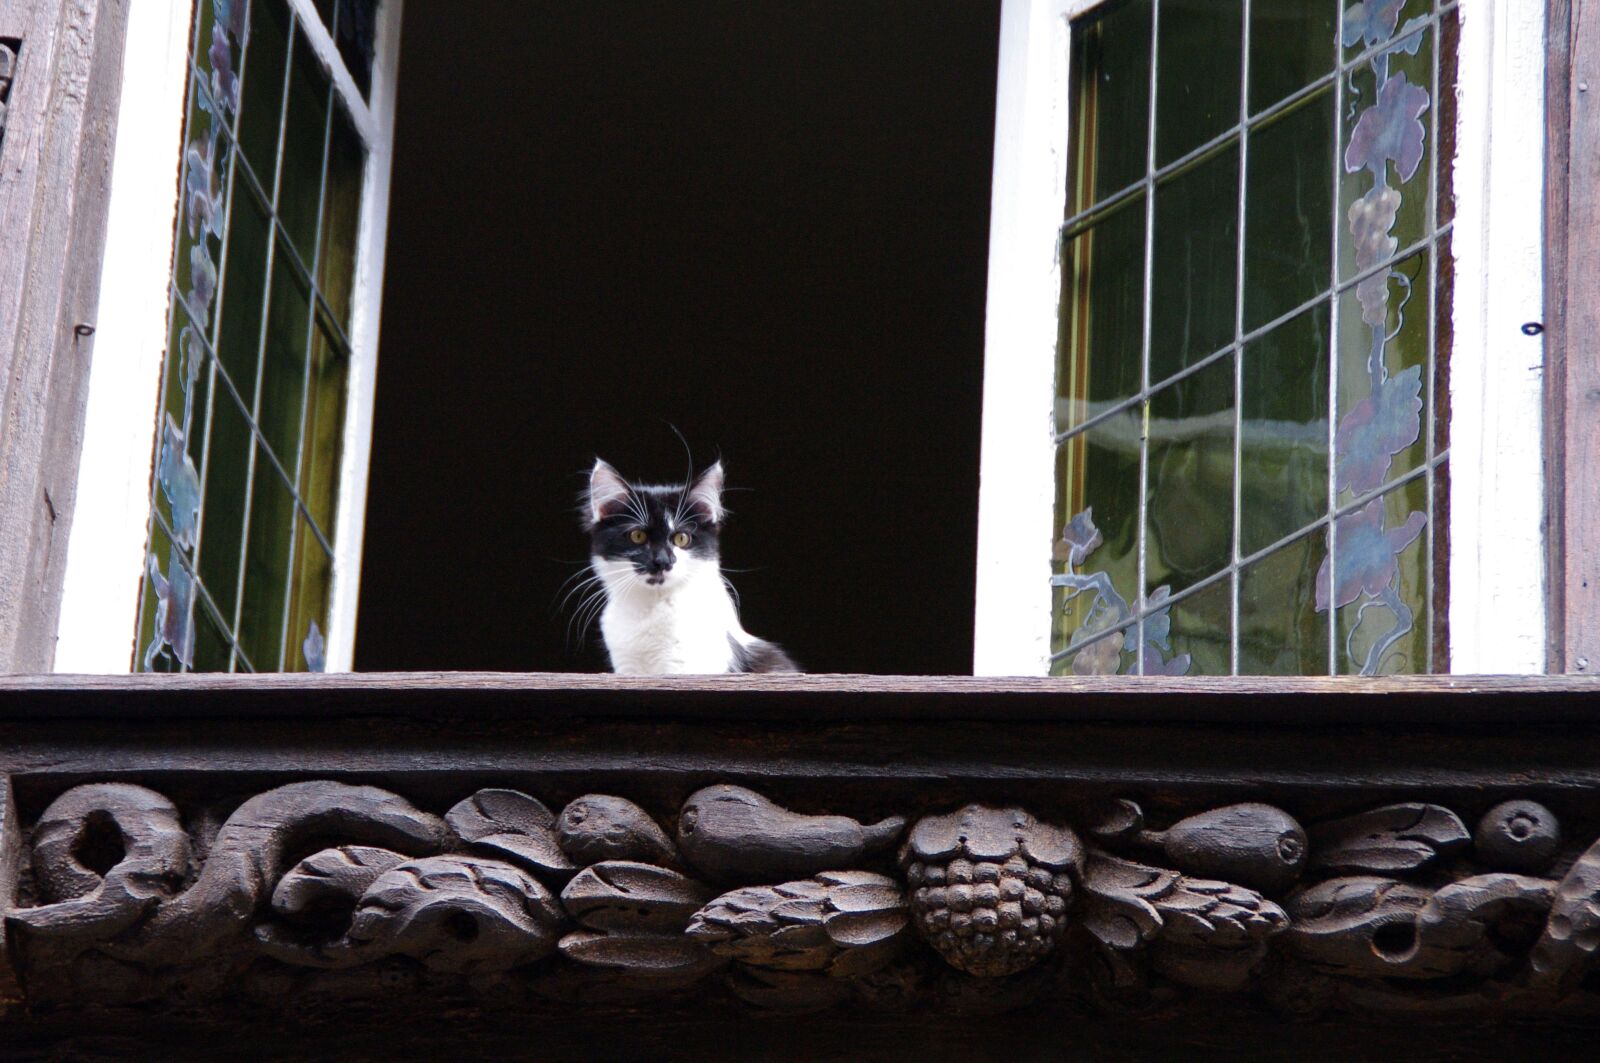 Pentax K-7 sample photo. Kitten, window, animal photography